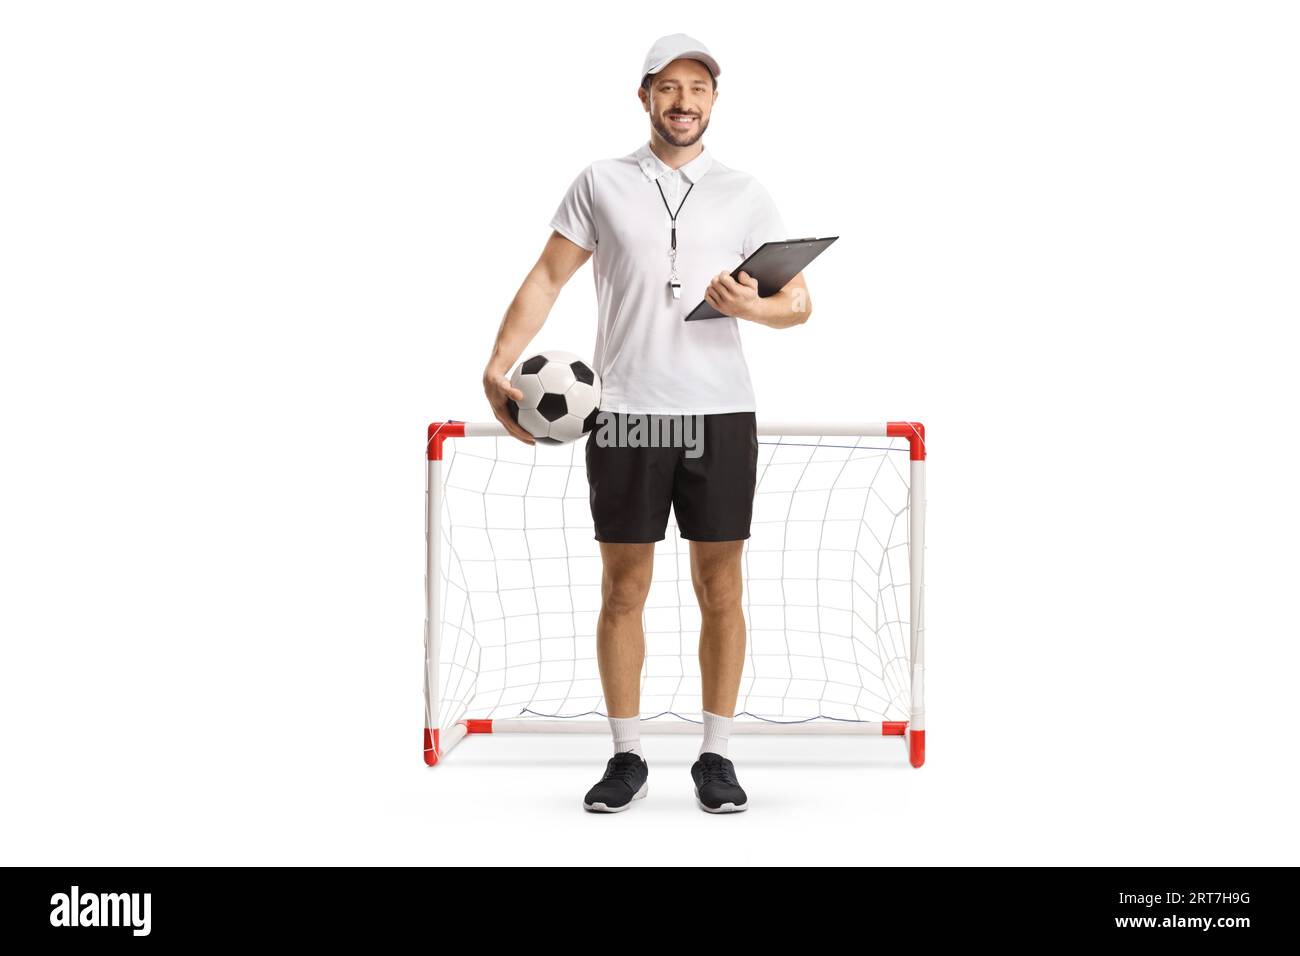 Portrait en longueur d'un entraîneur de football tenant un ballon et un presse-papiers devant un mini but isolé sur fond blanc Banque D'Images